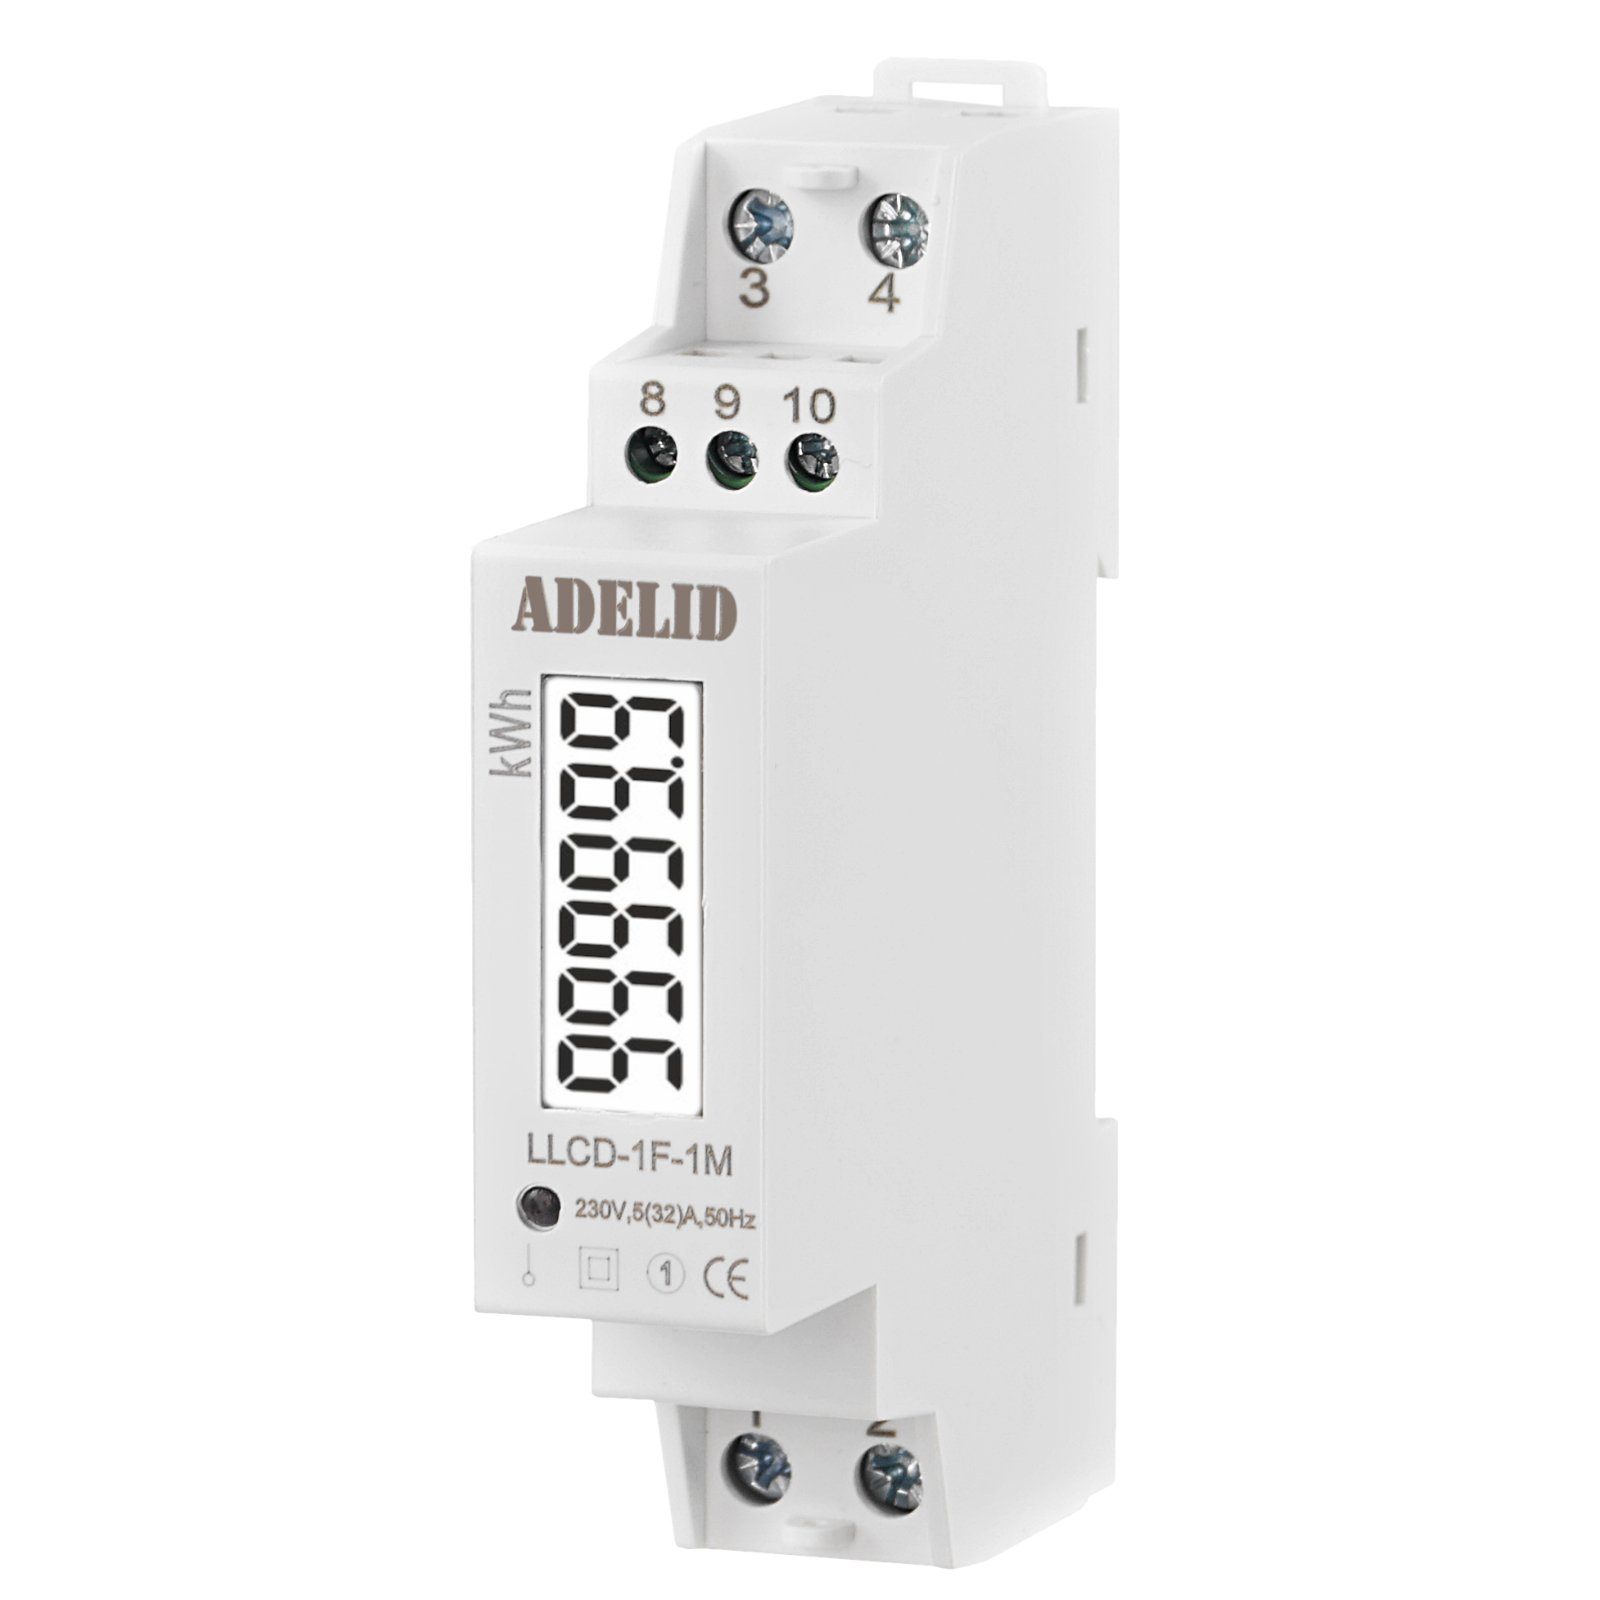 ADELID Schalter, Wechselstromzähler MID Signalleuchte Hutschiene DIN LCD 1-Phase Interface S0 digital 5(32)A